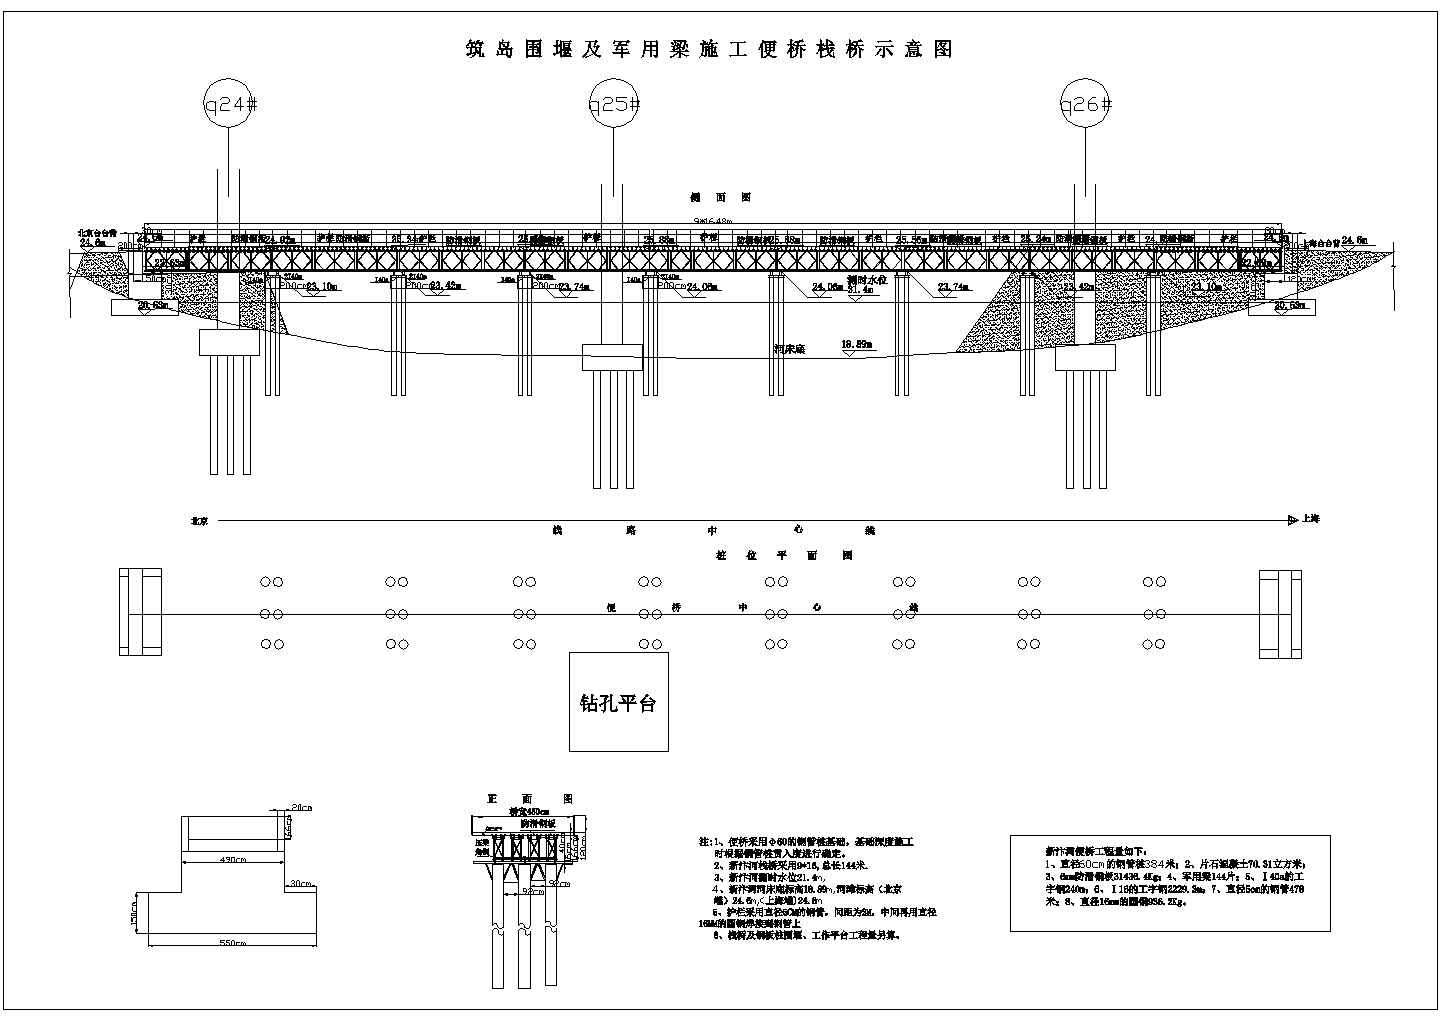 跨河特大桥钻孔灌注桩施工方案2008（鲁班奖工程）